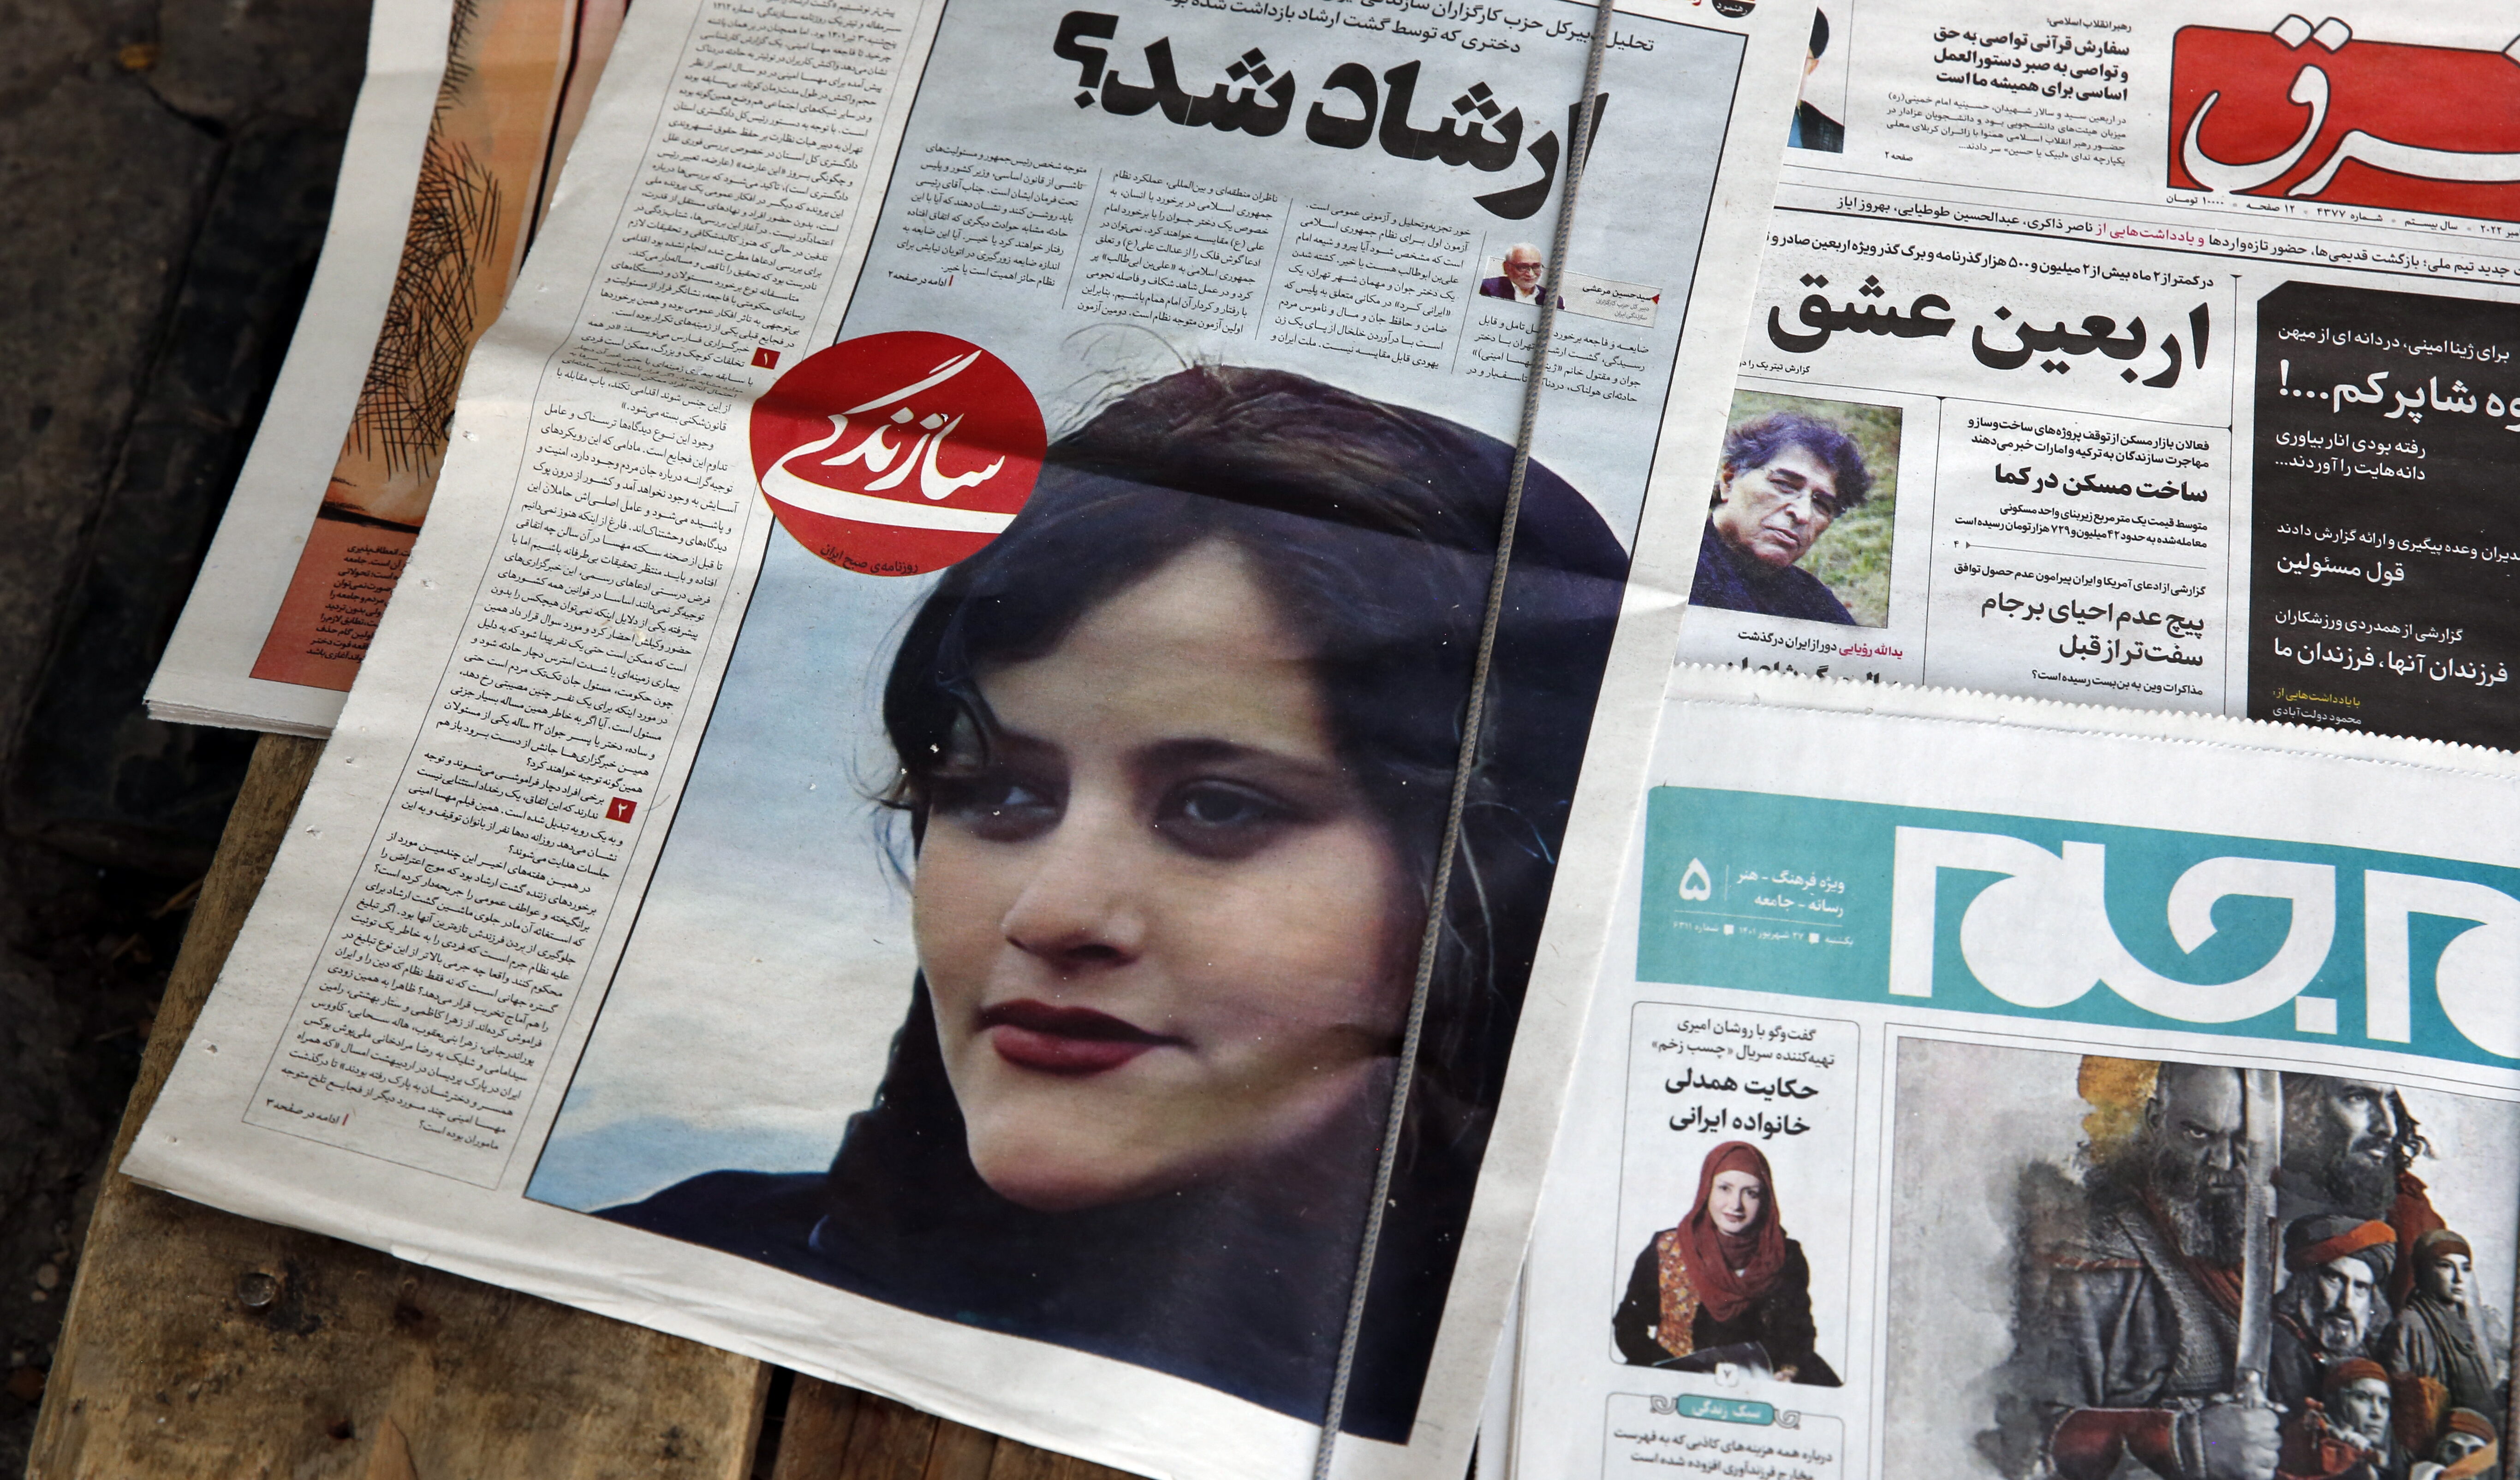 Η Roya Piraei ανοίγει την καρδιά της στην Angelina Jolie για τον θάνατο της μητέρας της στο Ιραν